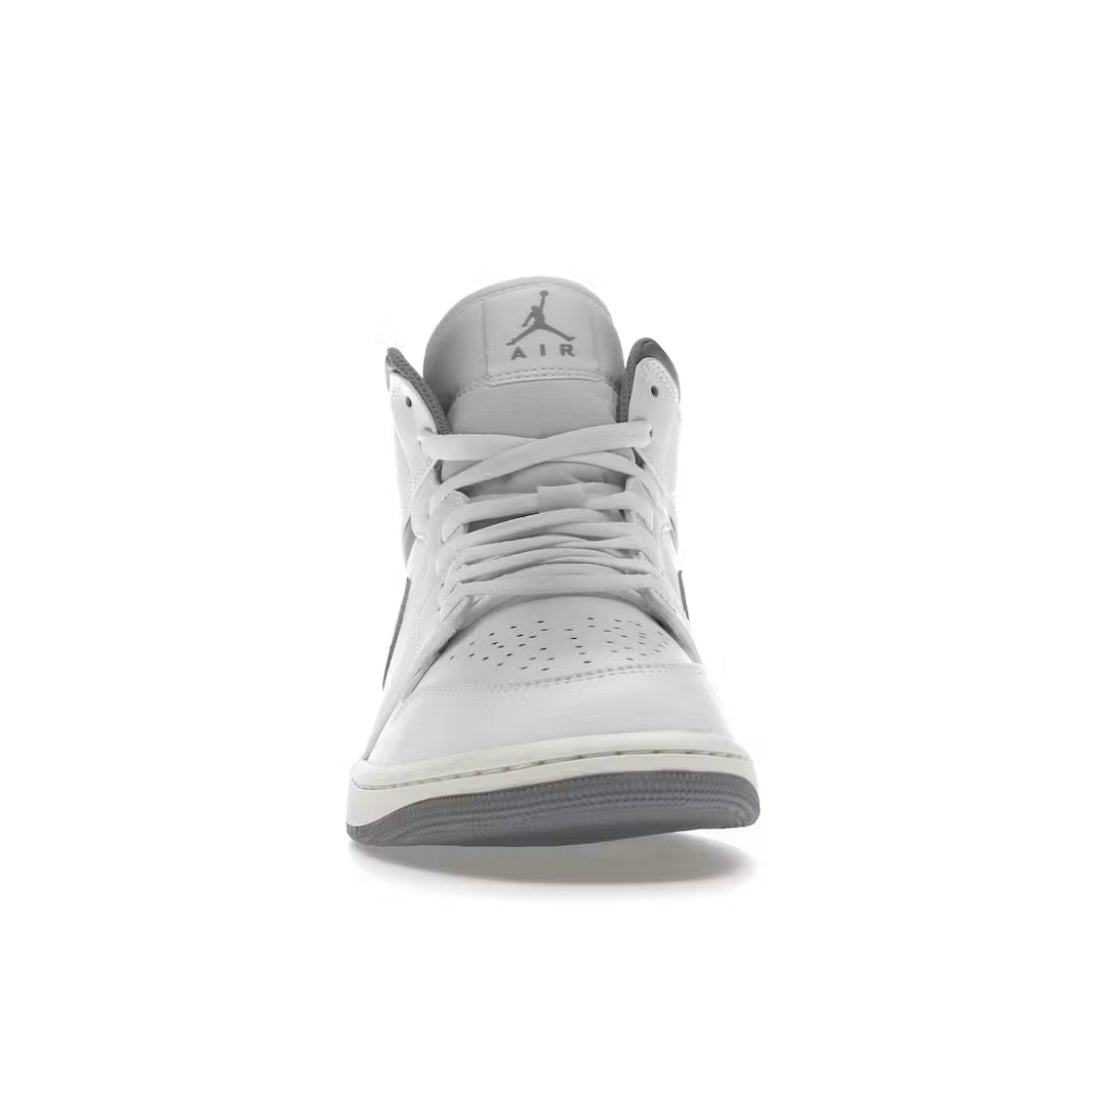 Jordan 1 Mid “Neutral Grey”